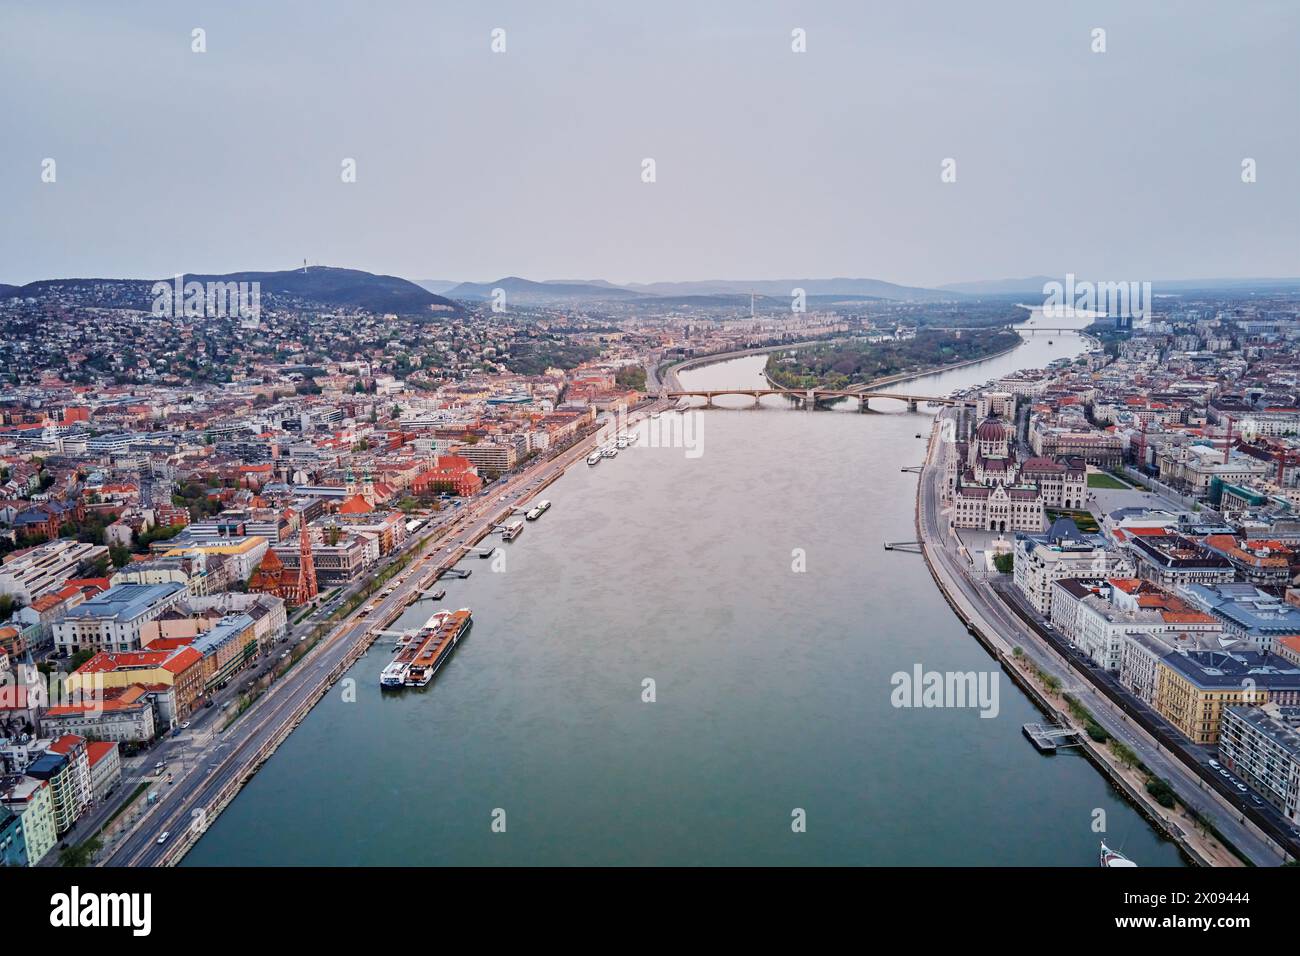 Panoramablick auf die Skyline von Budapest entlang der Donau. Blick aus der Vogelperspektive auf die Hauptstadt Ungarns mit historischen Gebäuden und berühmten Wahrzeichen Stockfoto